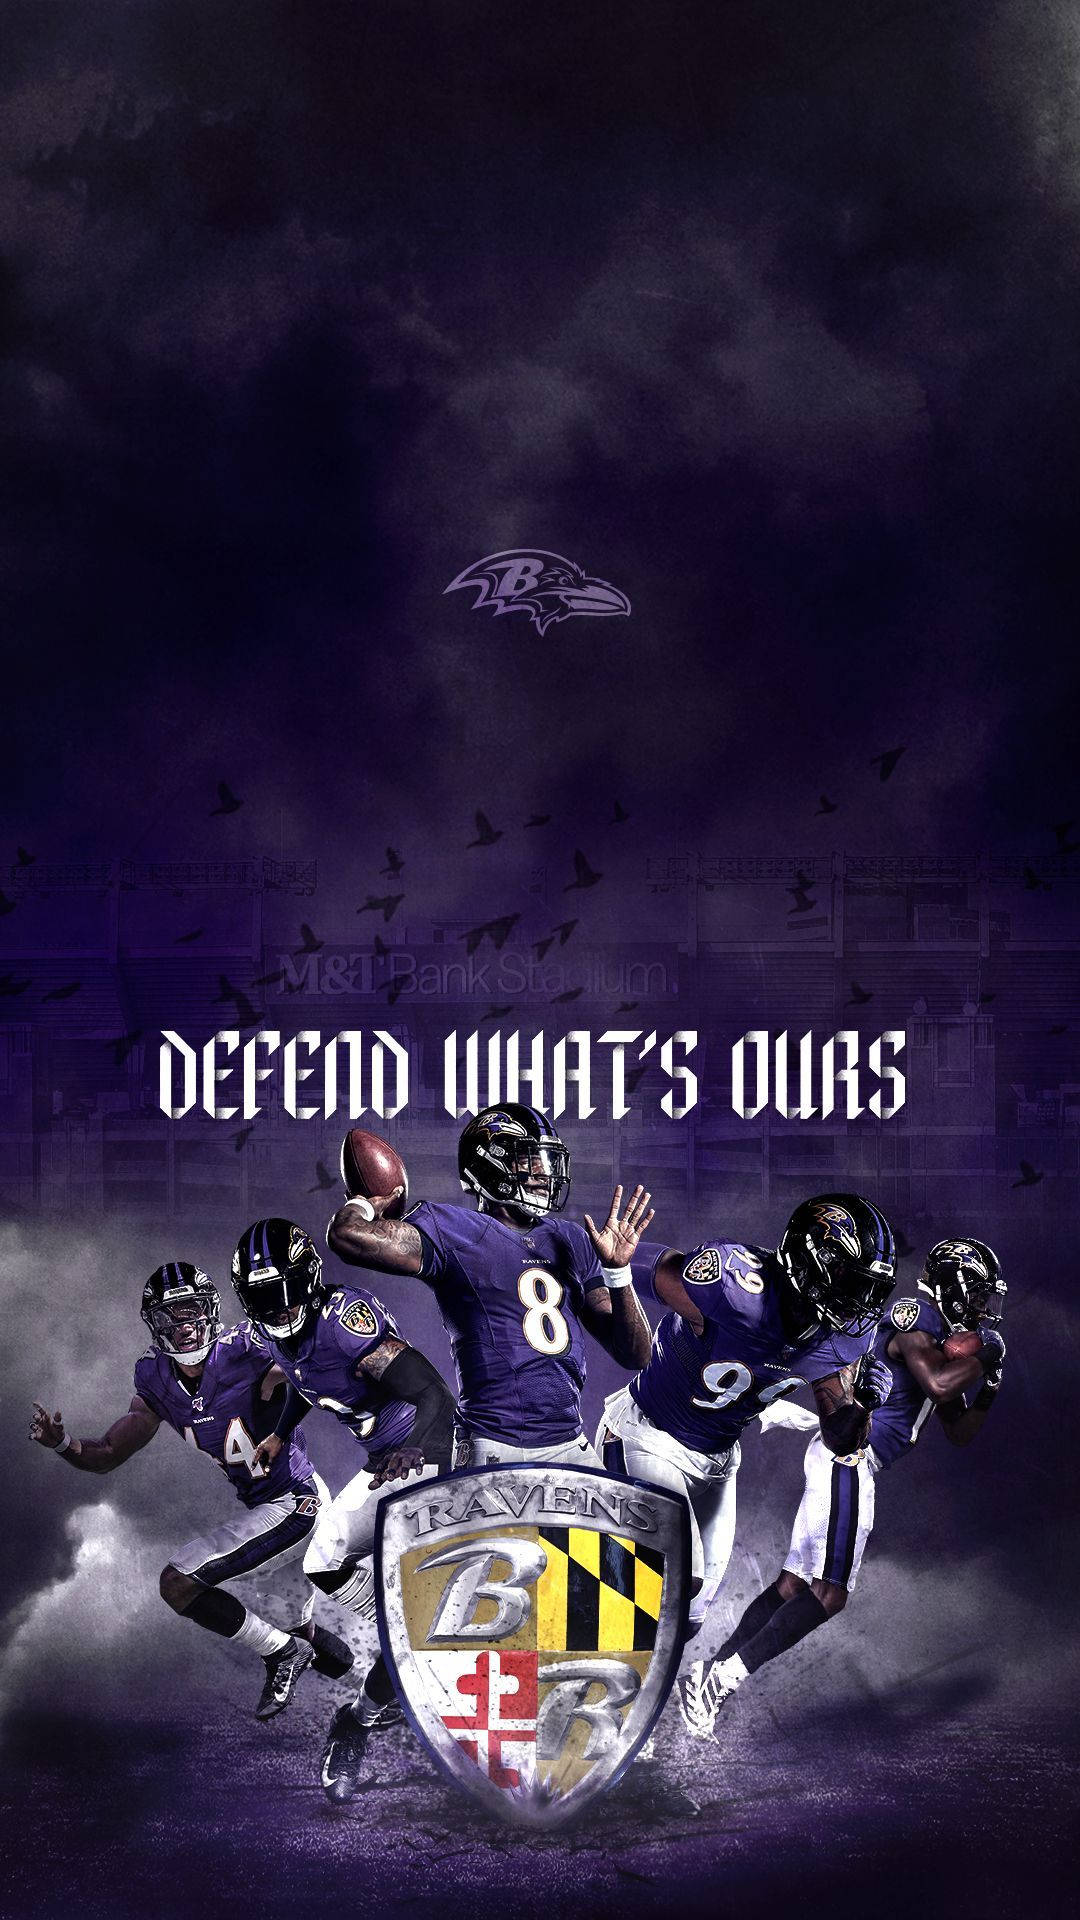 Vis din Ravens stolthed med denne Baltimore Ravens iPhone tapet! Wallpaper